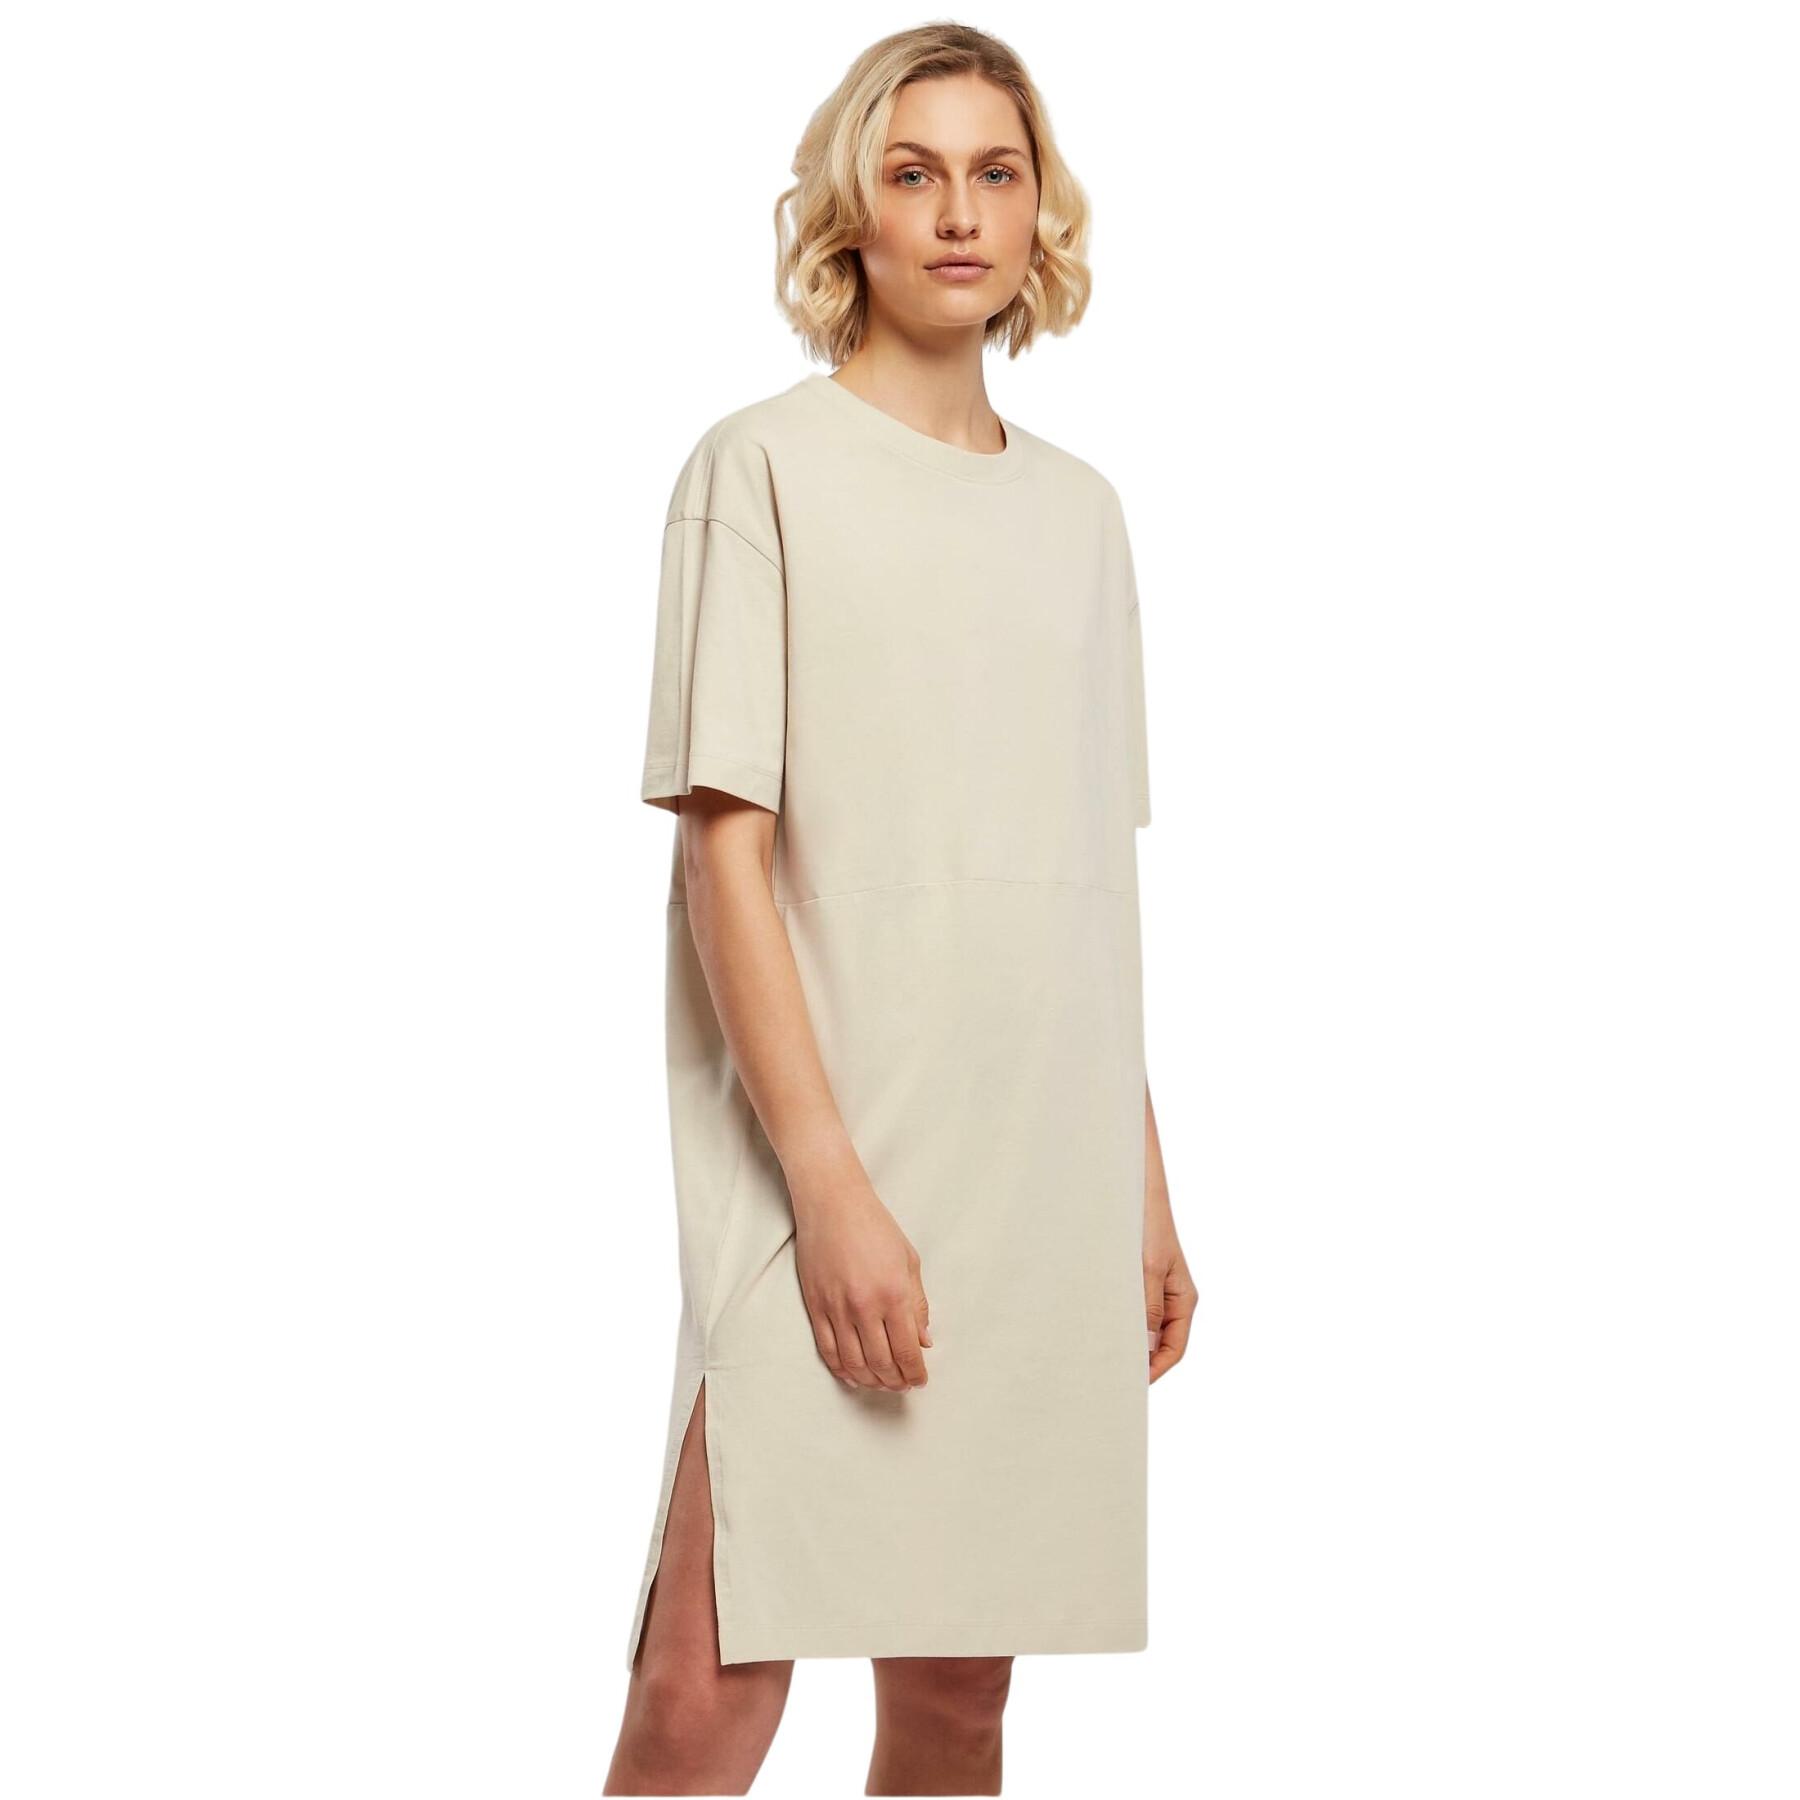 Maglietta donna con spacco Urban Classics Organic Oversized